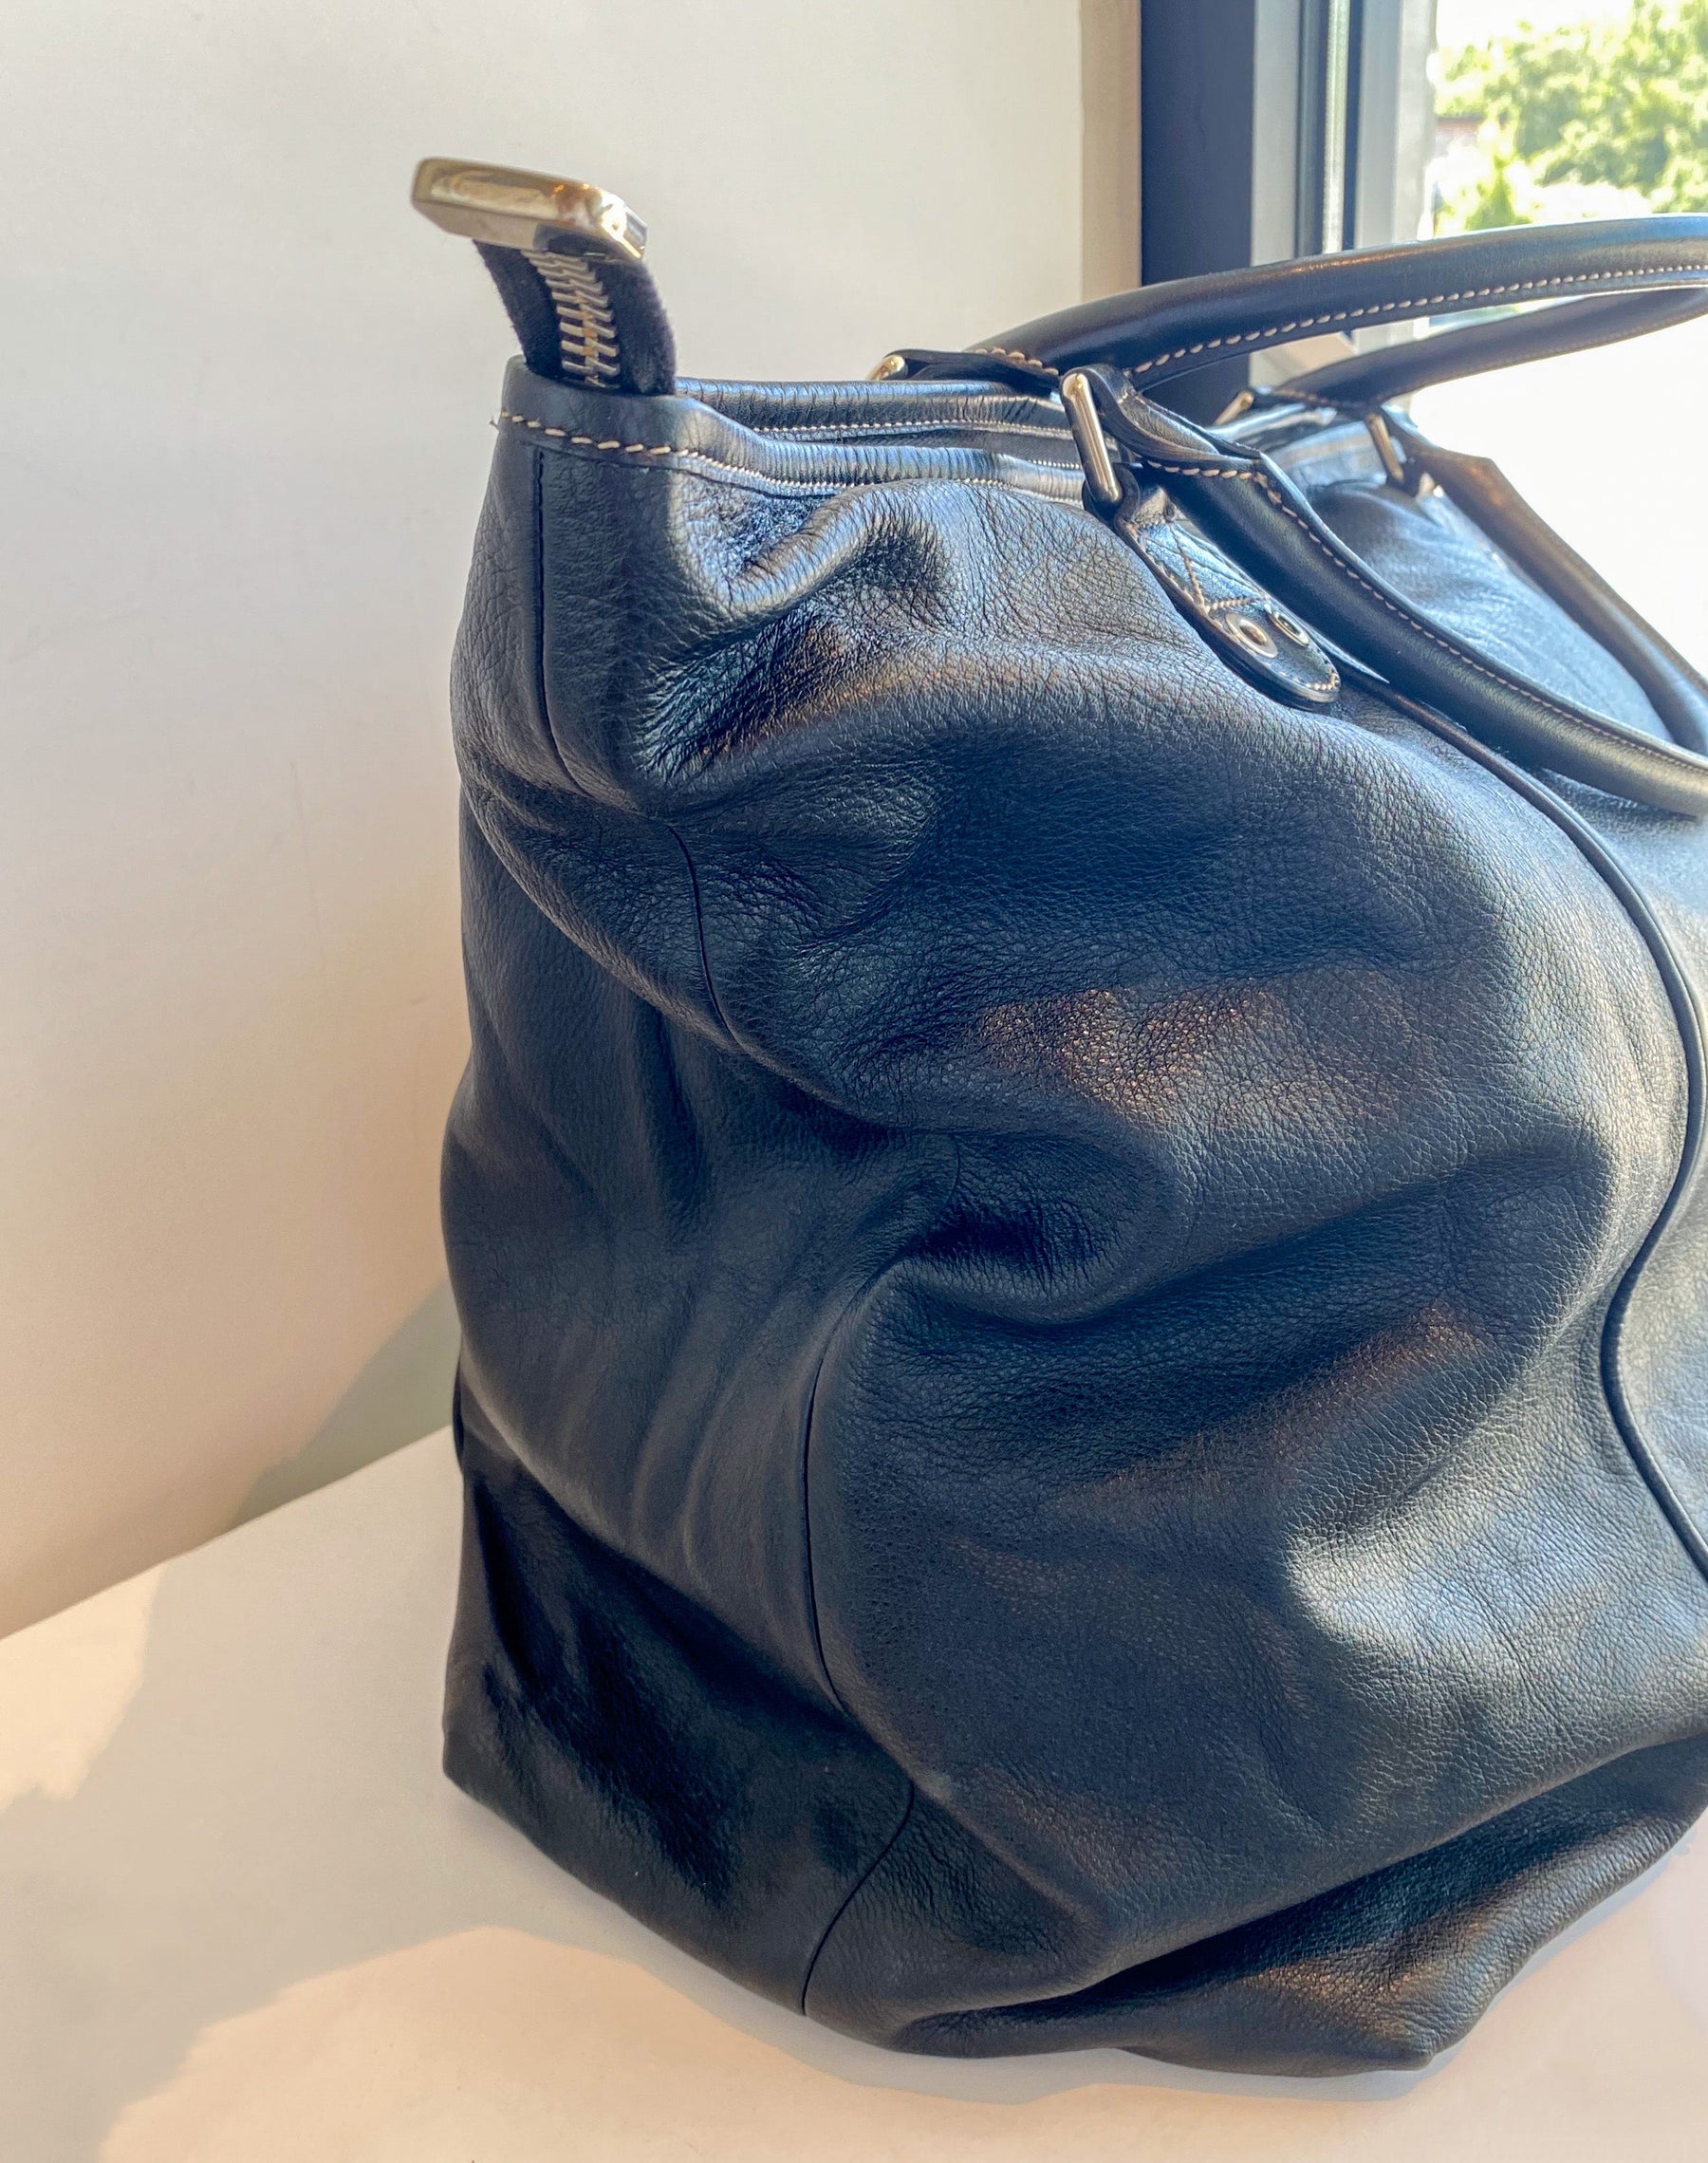 Gucci Black Leather Weekender Bag Side of Bag